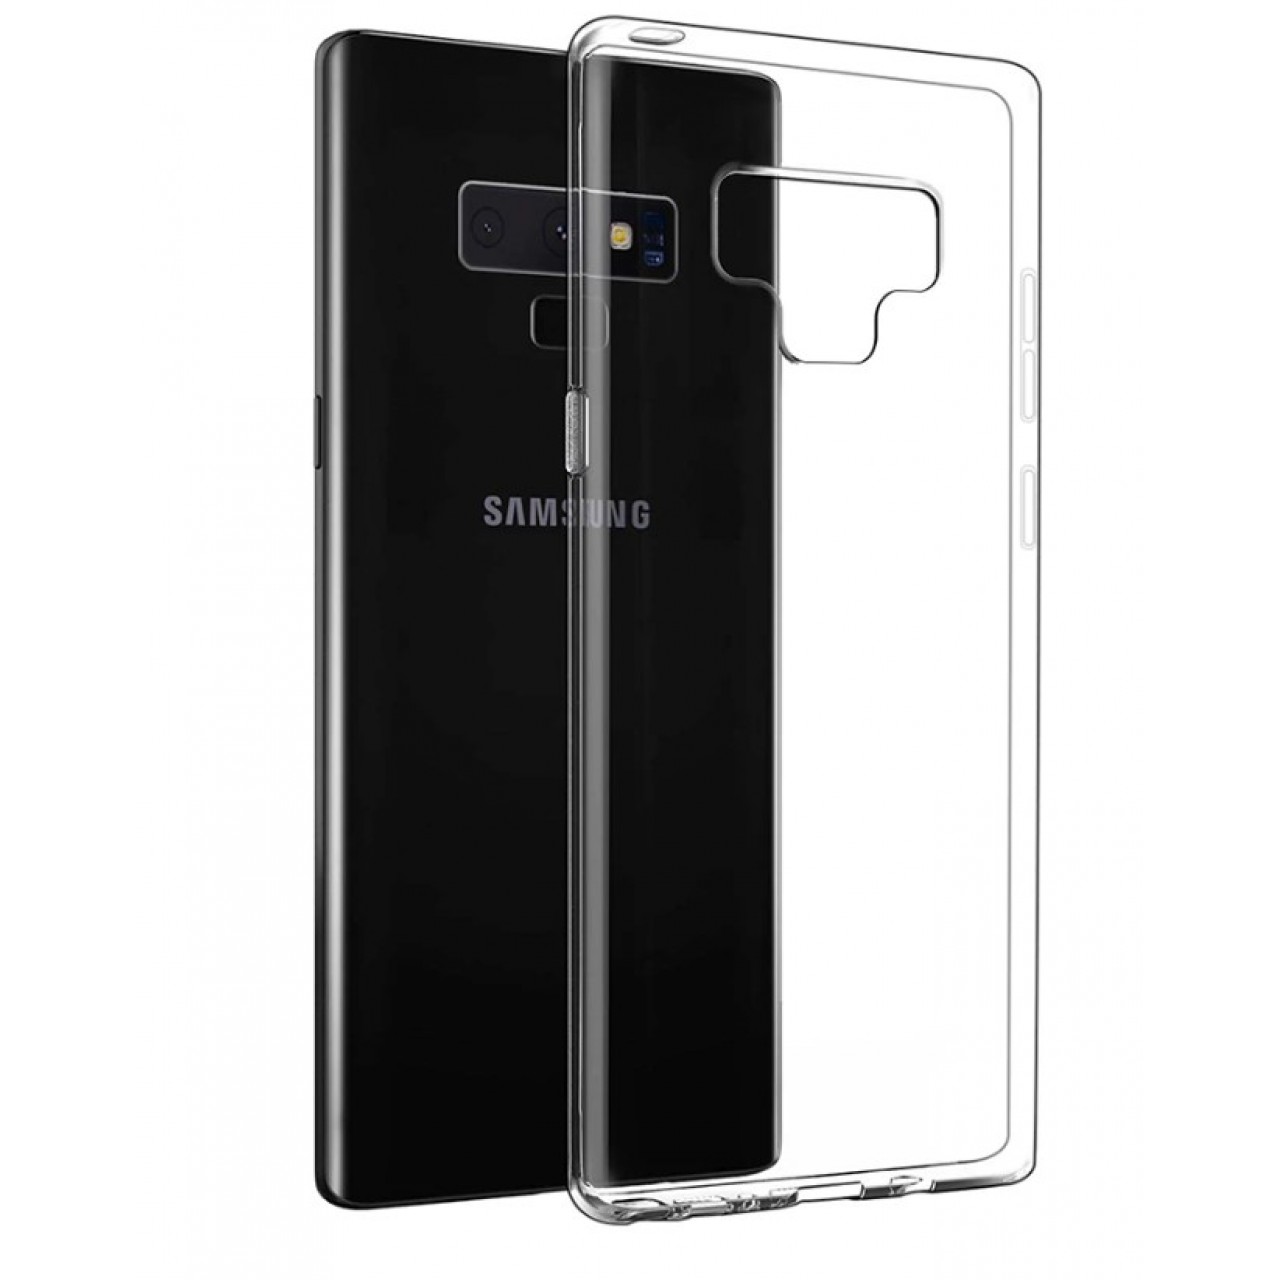 Θήκη Samsung Galaxy Note 9 ( N960 ) Σιλικόνης TPU - 4351 - Διάφανο - ΟΕΜ